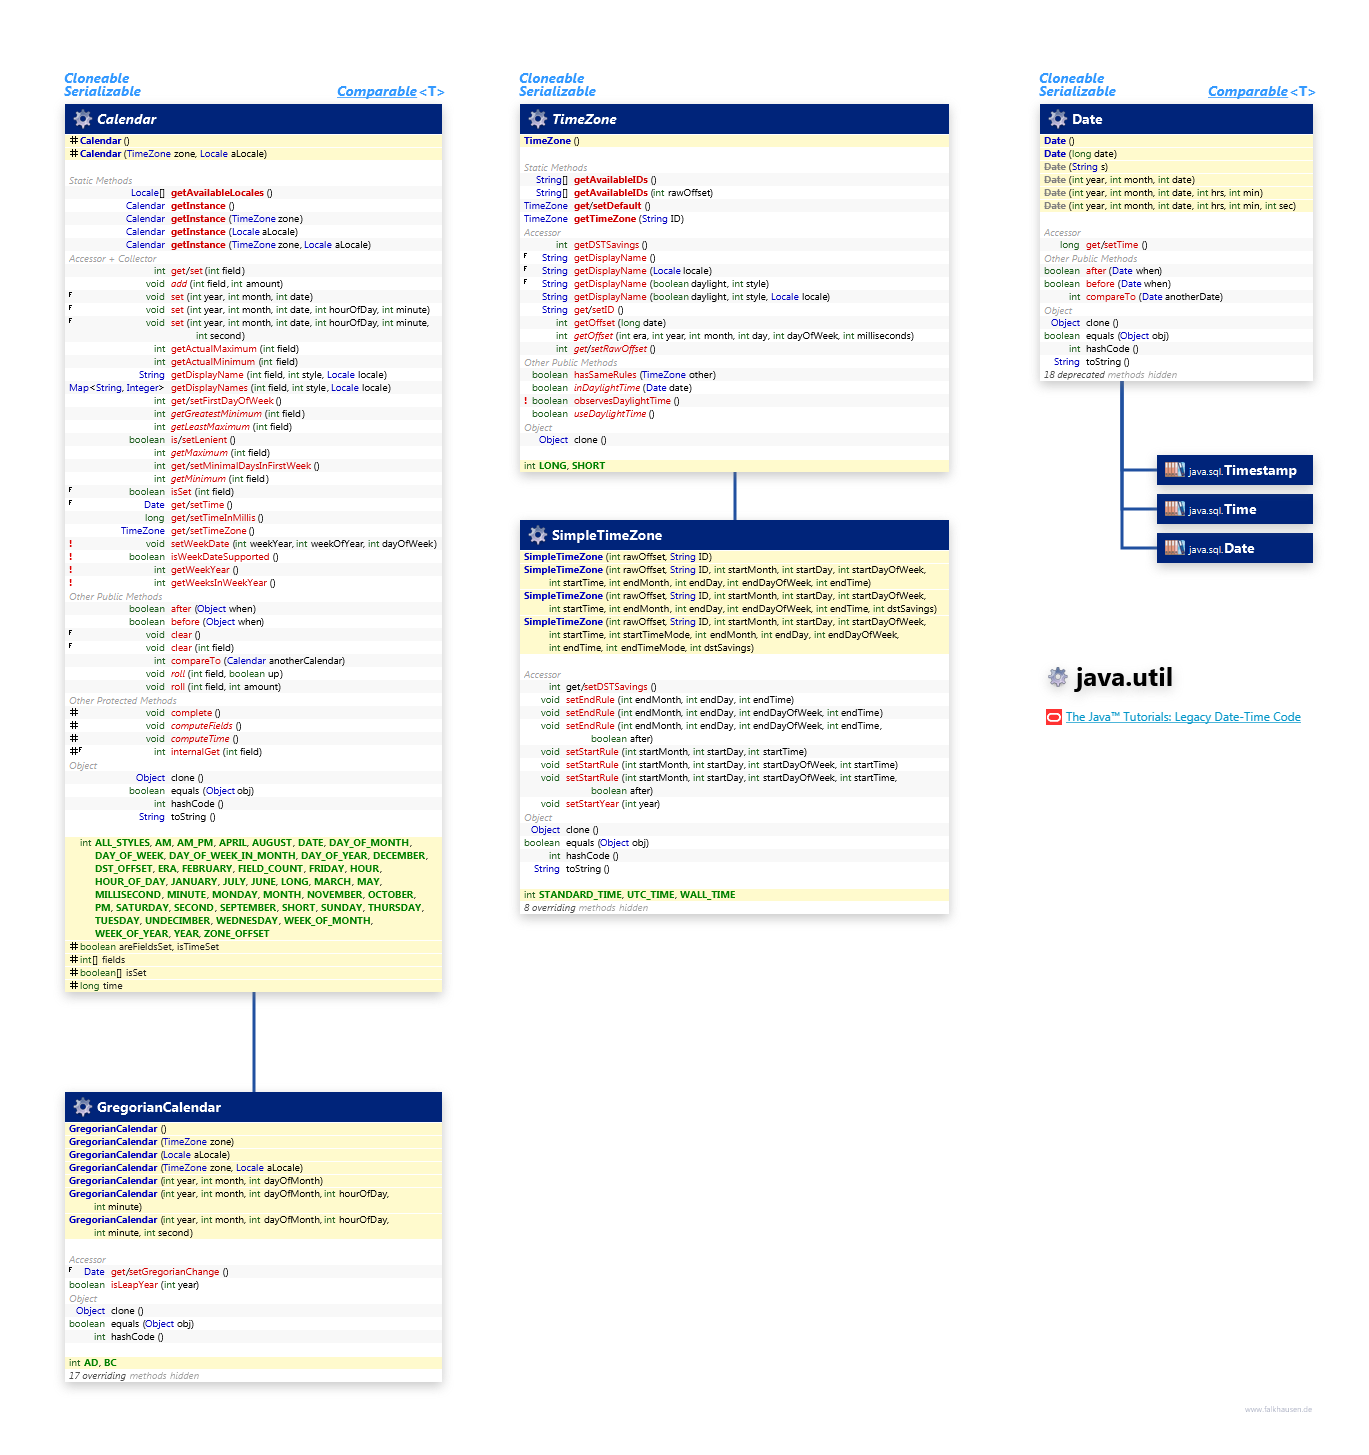 java.util Calendar class diagram and api documentation for Java 7